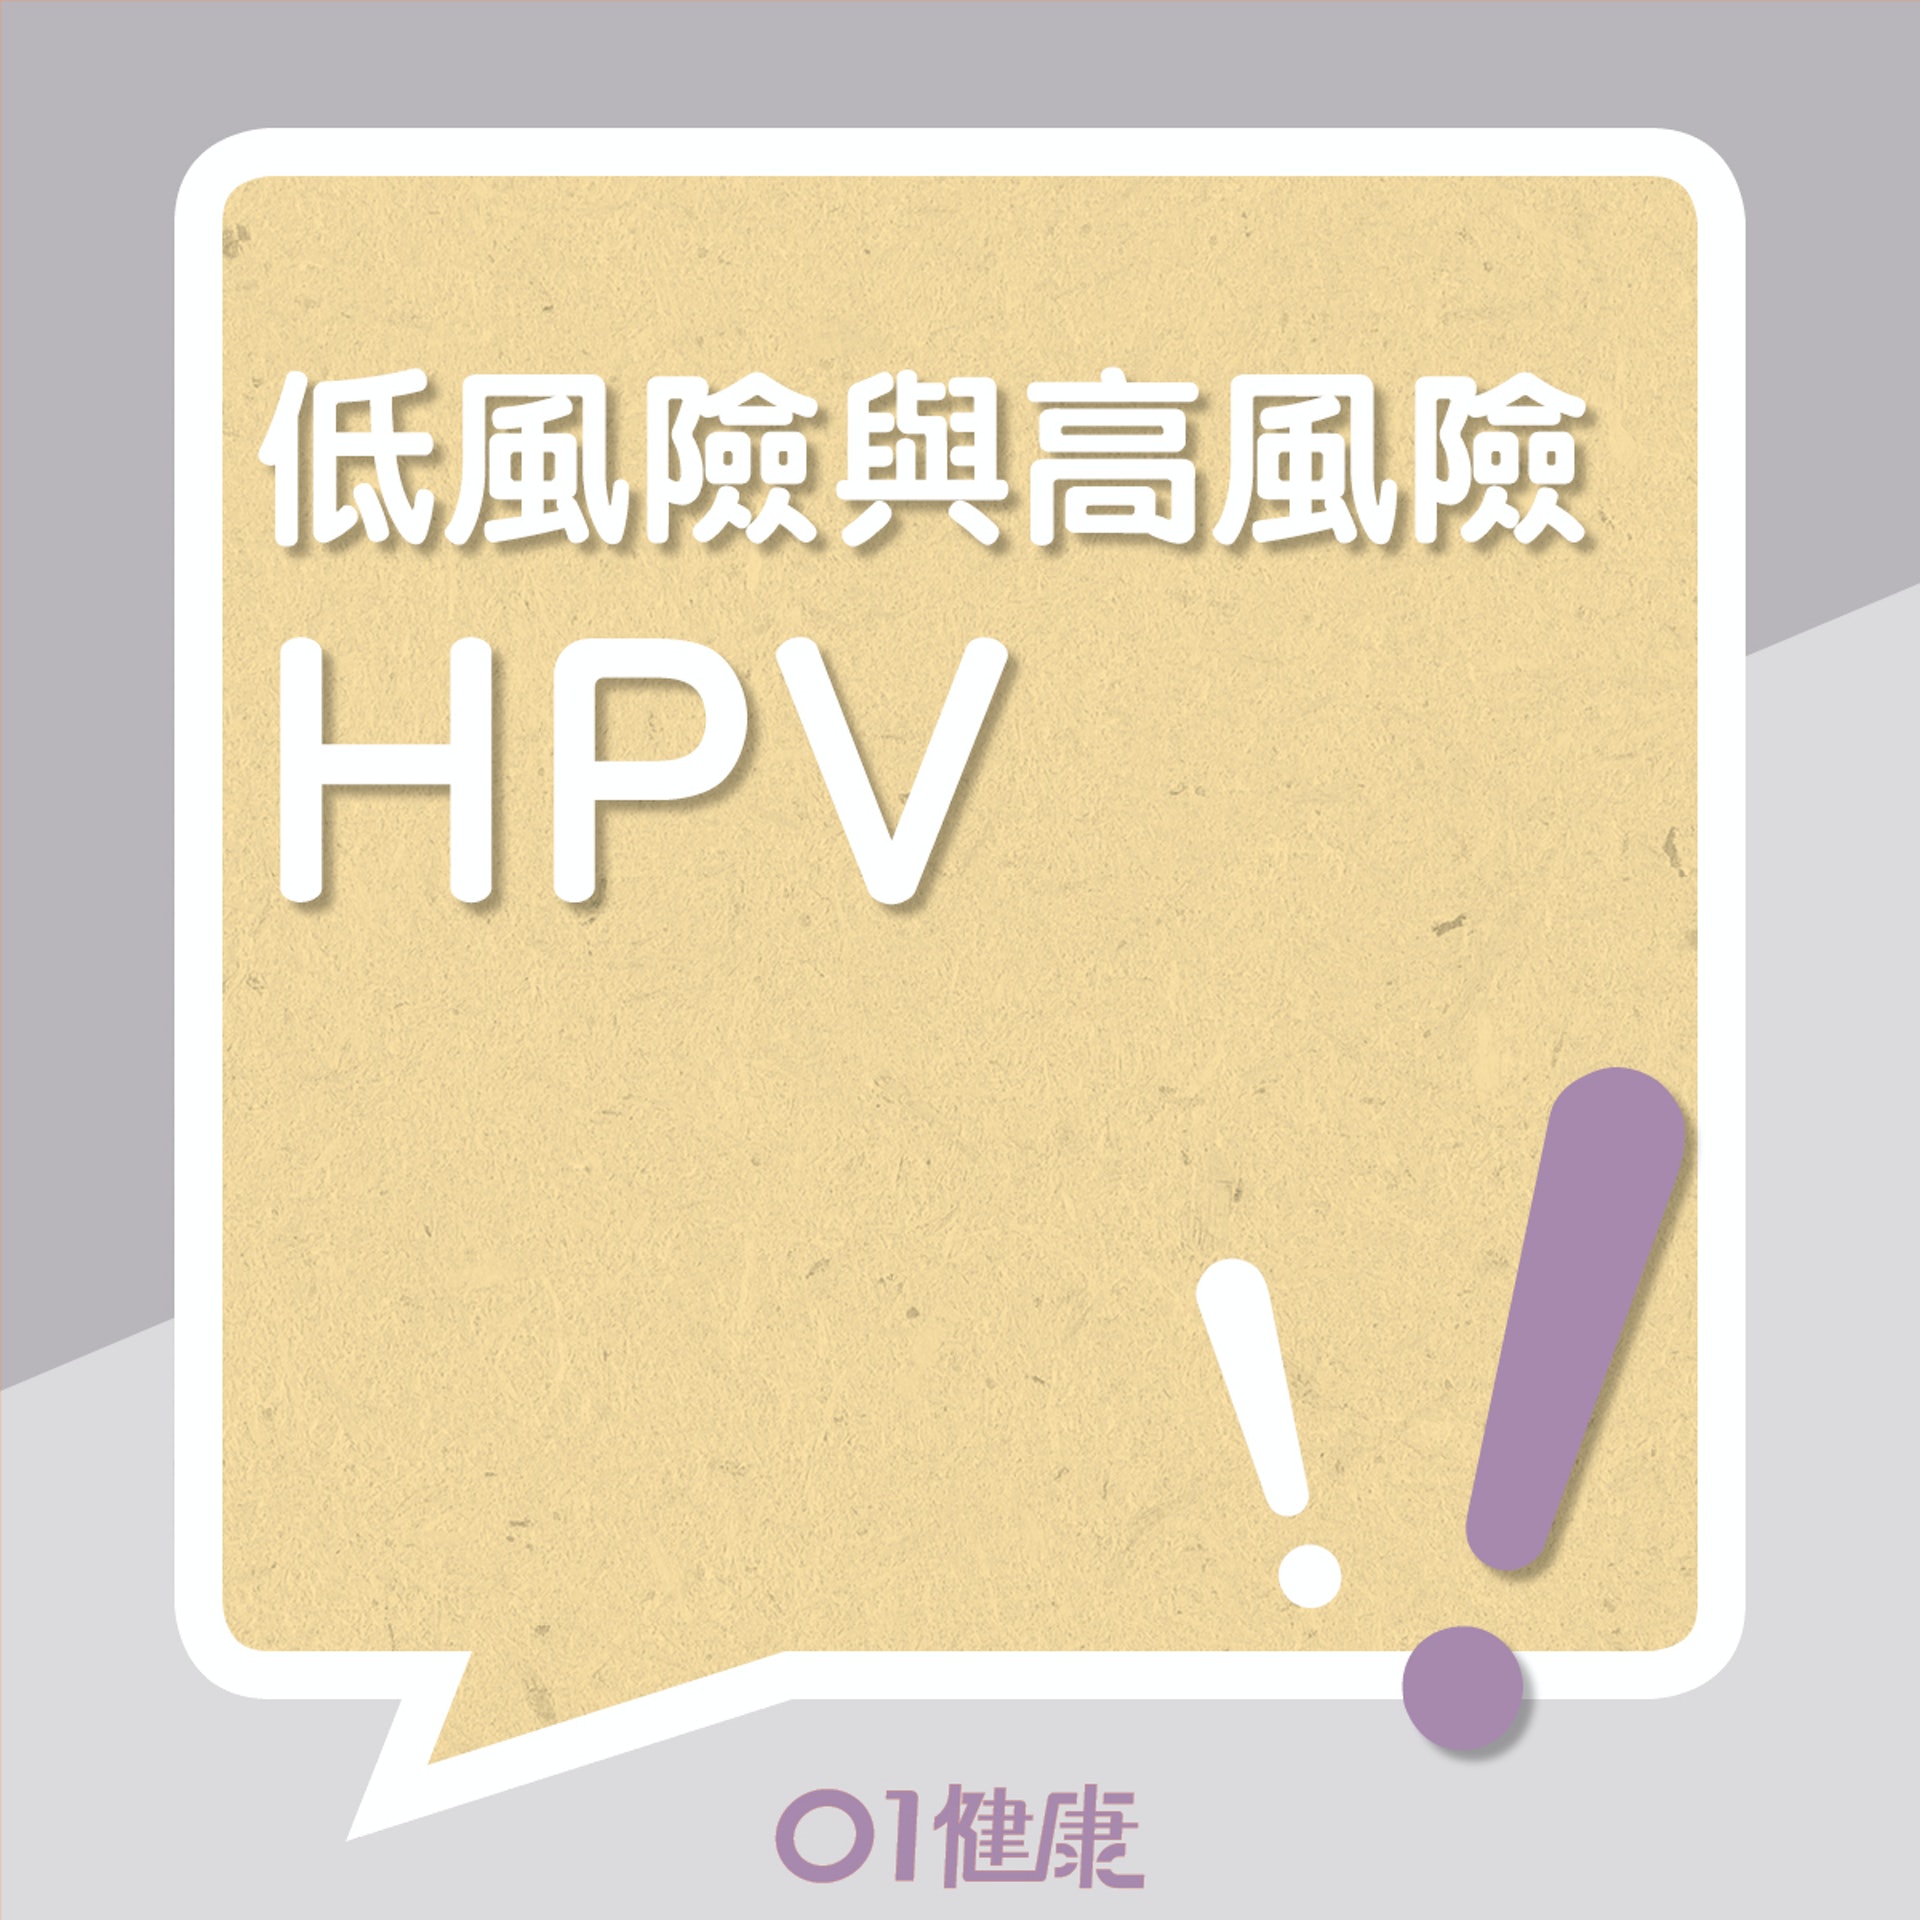 口腔癌與HPV關係（01製圖）